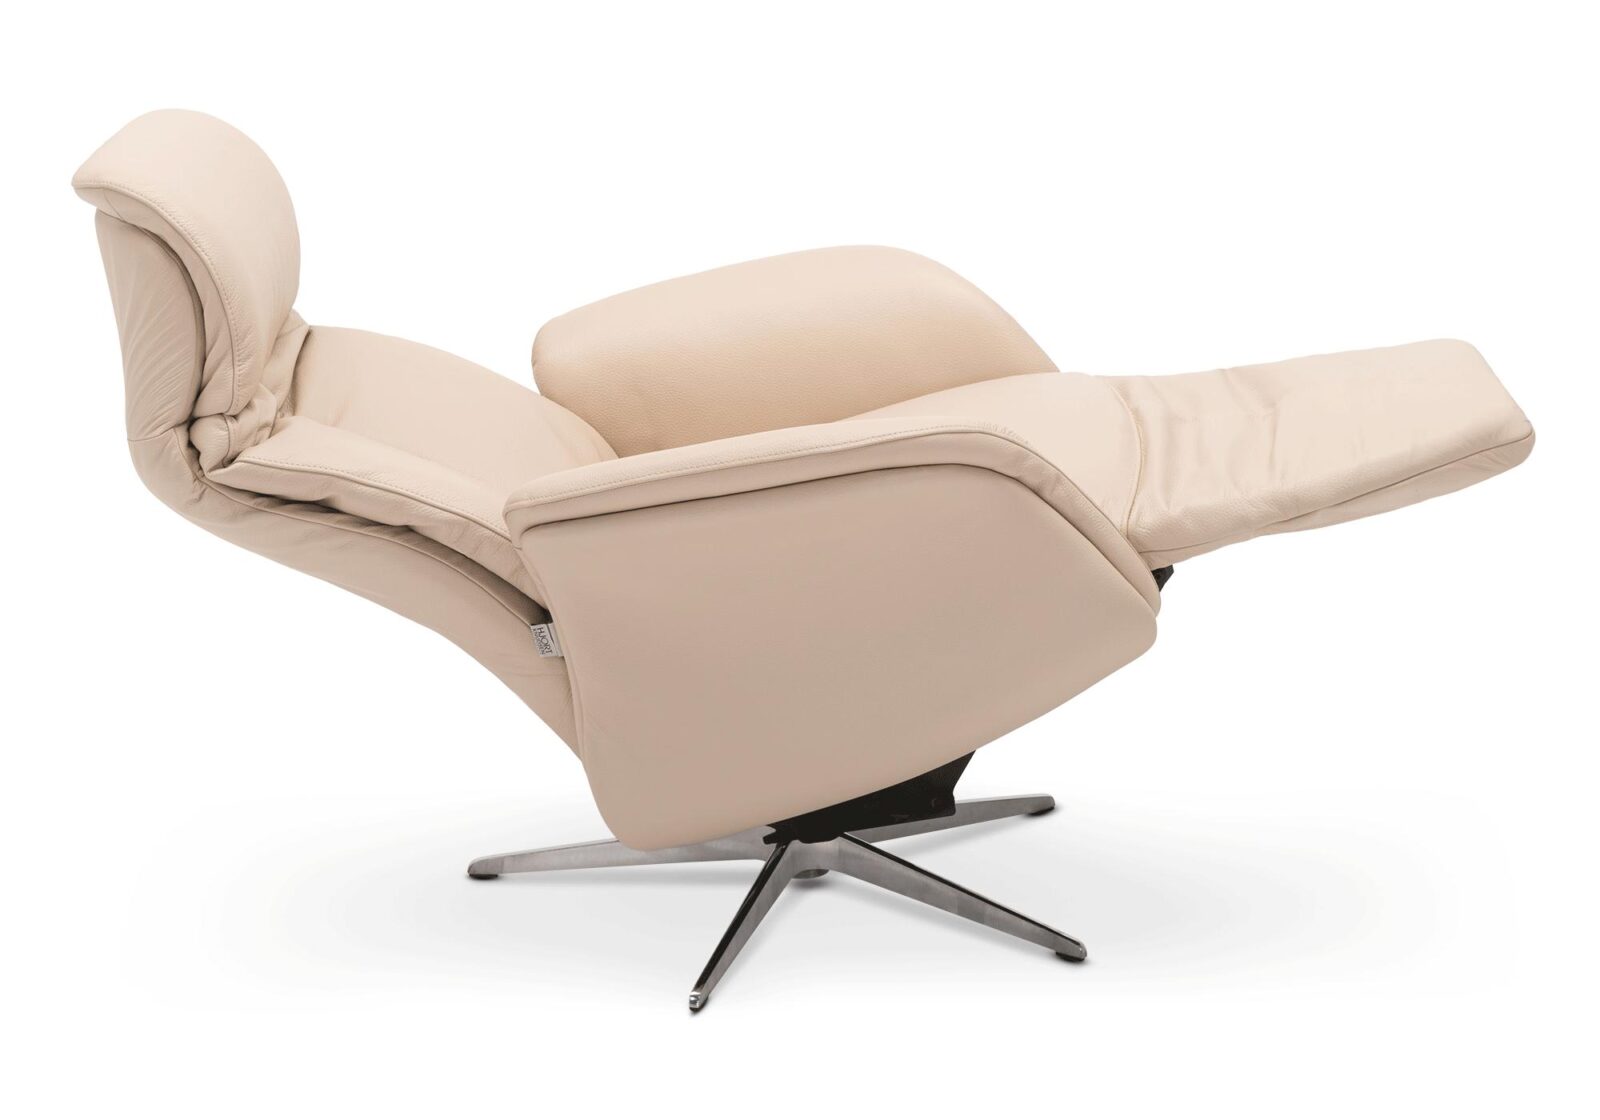 Relaxsessel Momo  elektrisch verstellbar. Bezug: Leder. Farbe: Beige. Erhältlich bei Möbel Gallati.